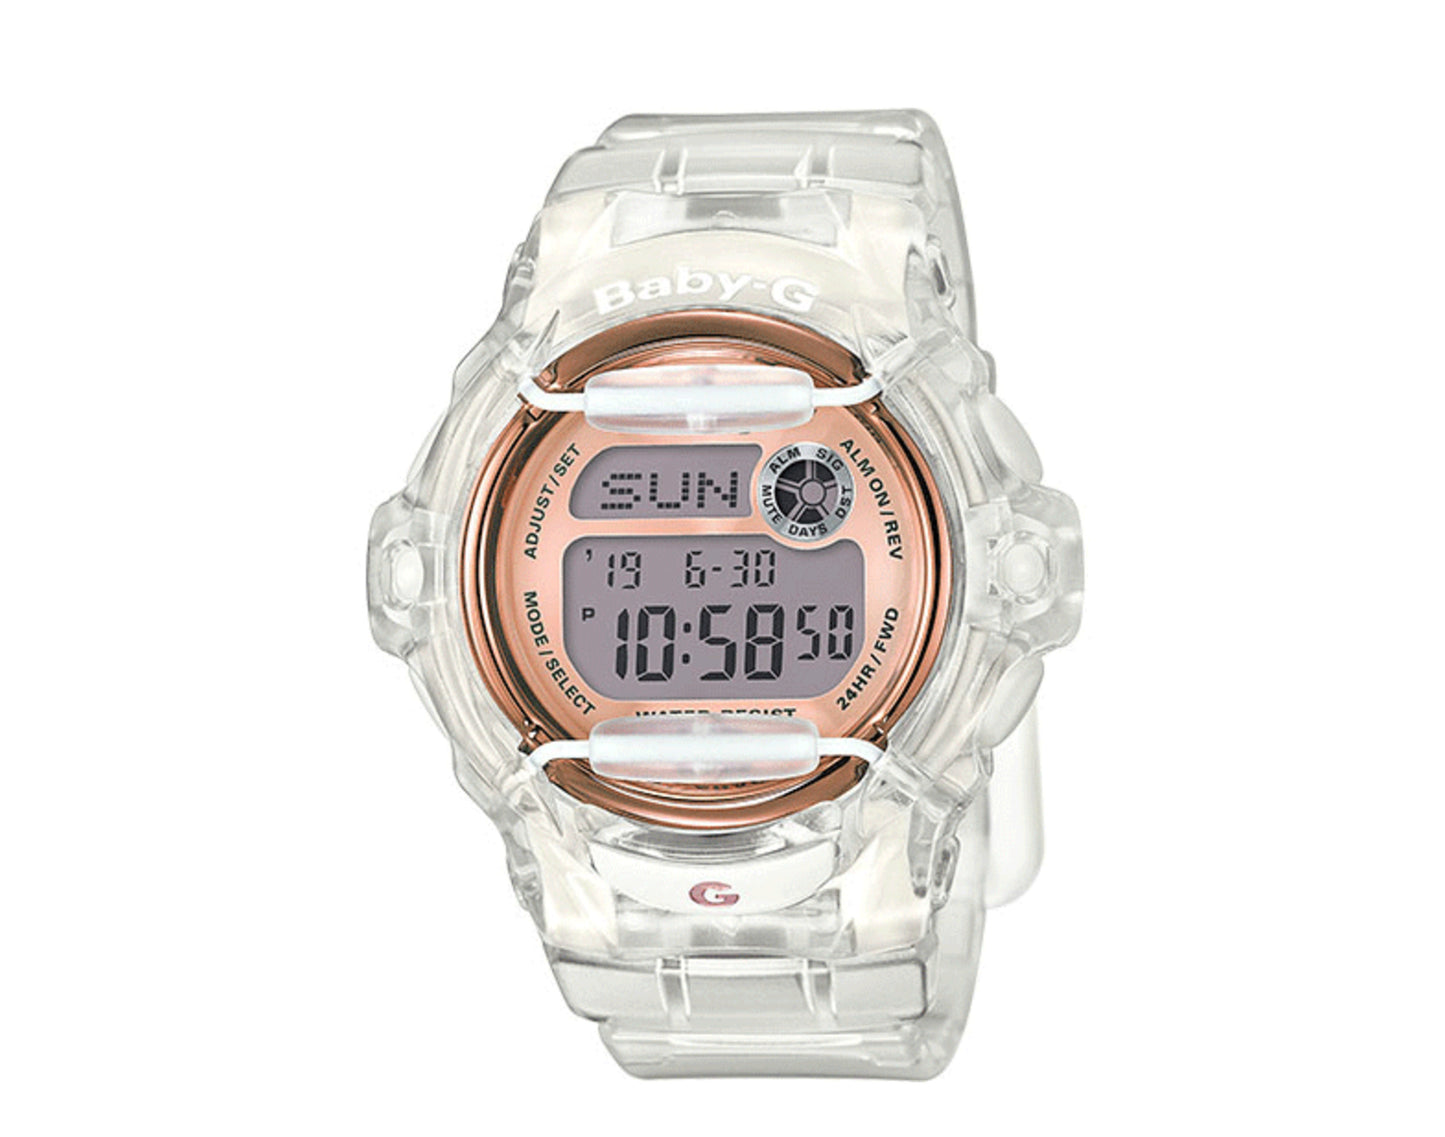 Casio G-Shock Baby-G BG169 Analog Resin Women's Watch